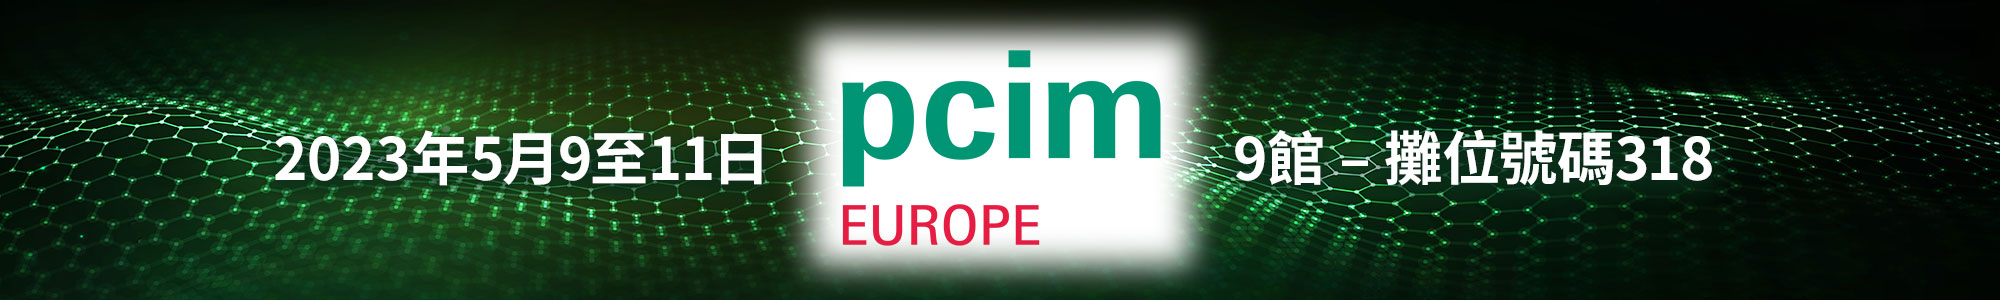 EPC at PCIM Europe 2023